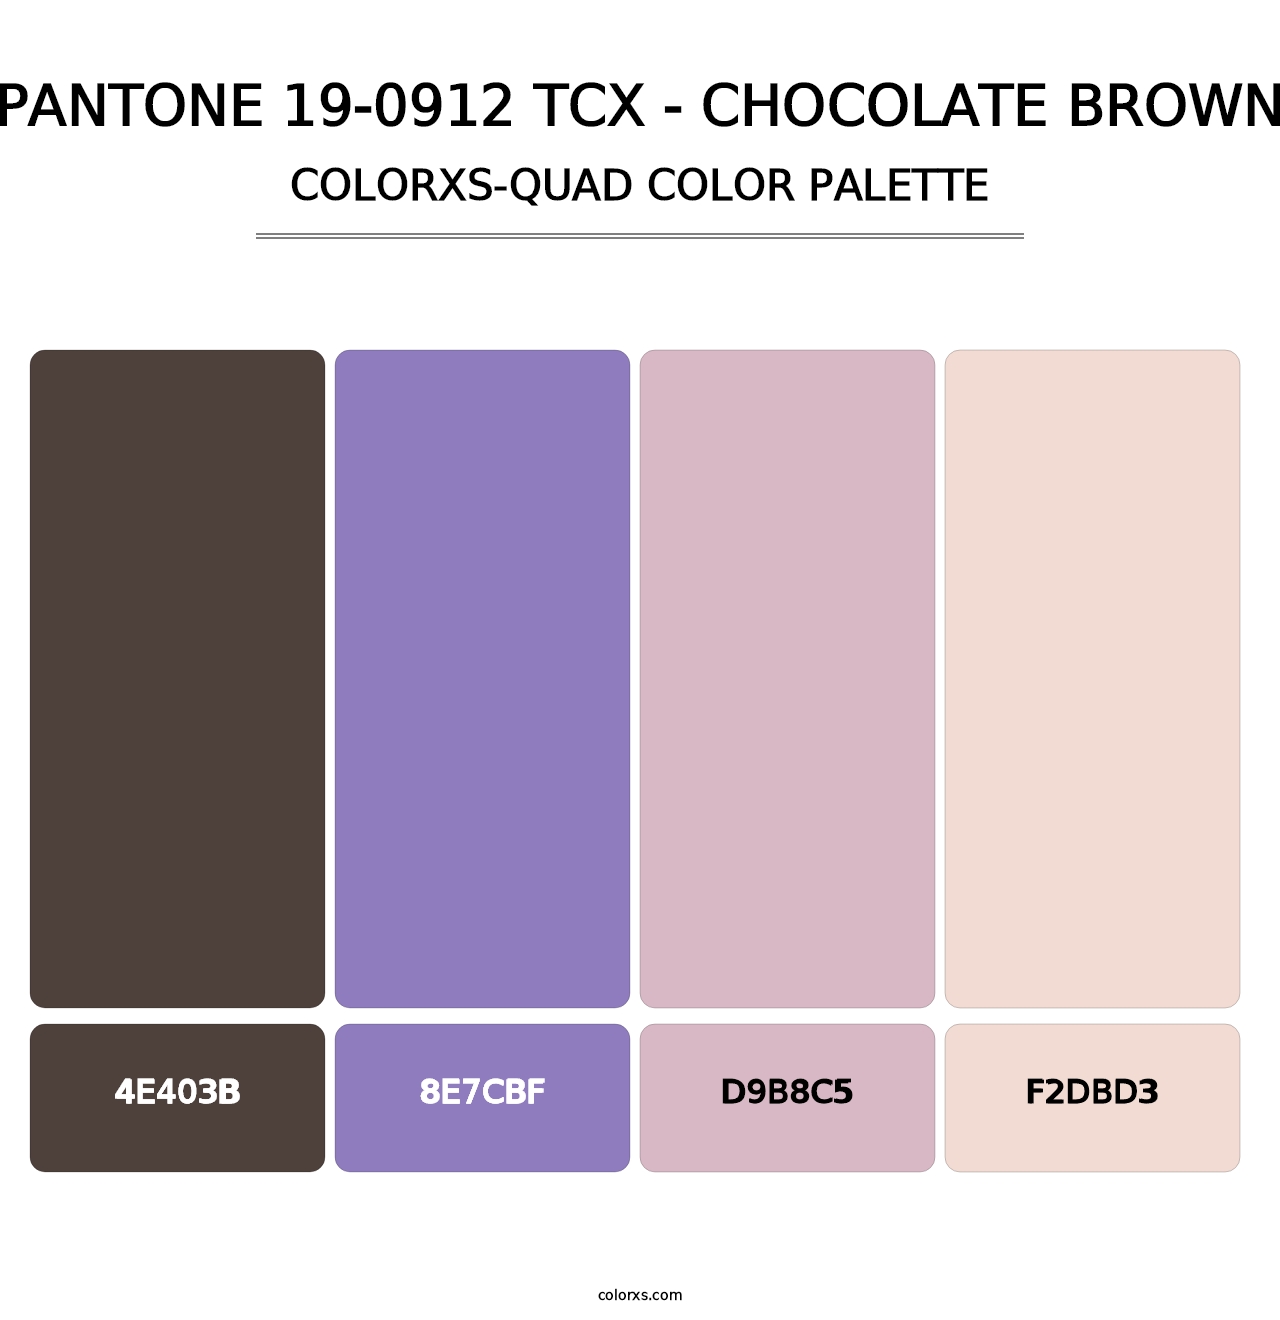 PANTONE 19-0912 TCX - Chocolate Brown - Colorxs Quad Palette